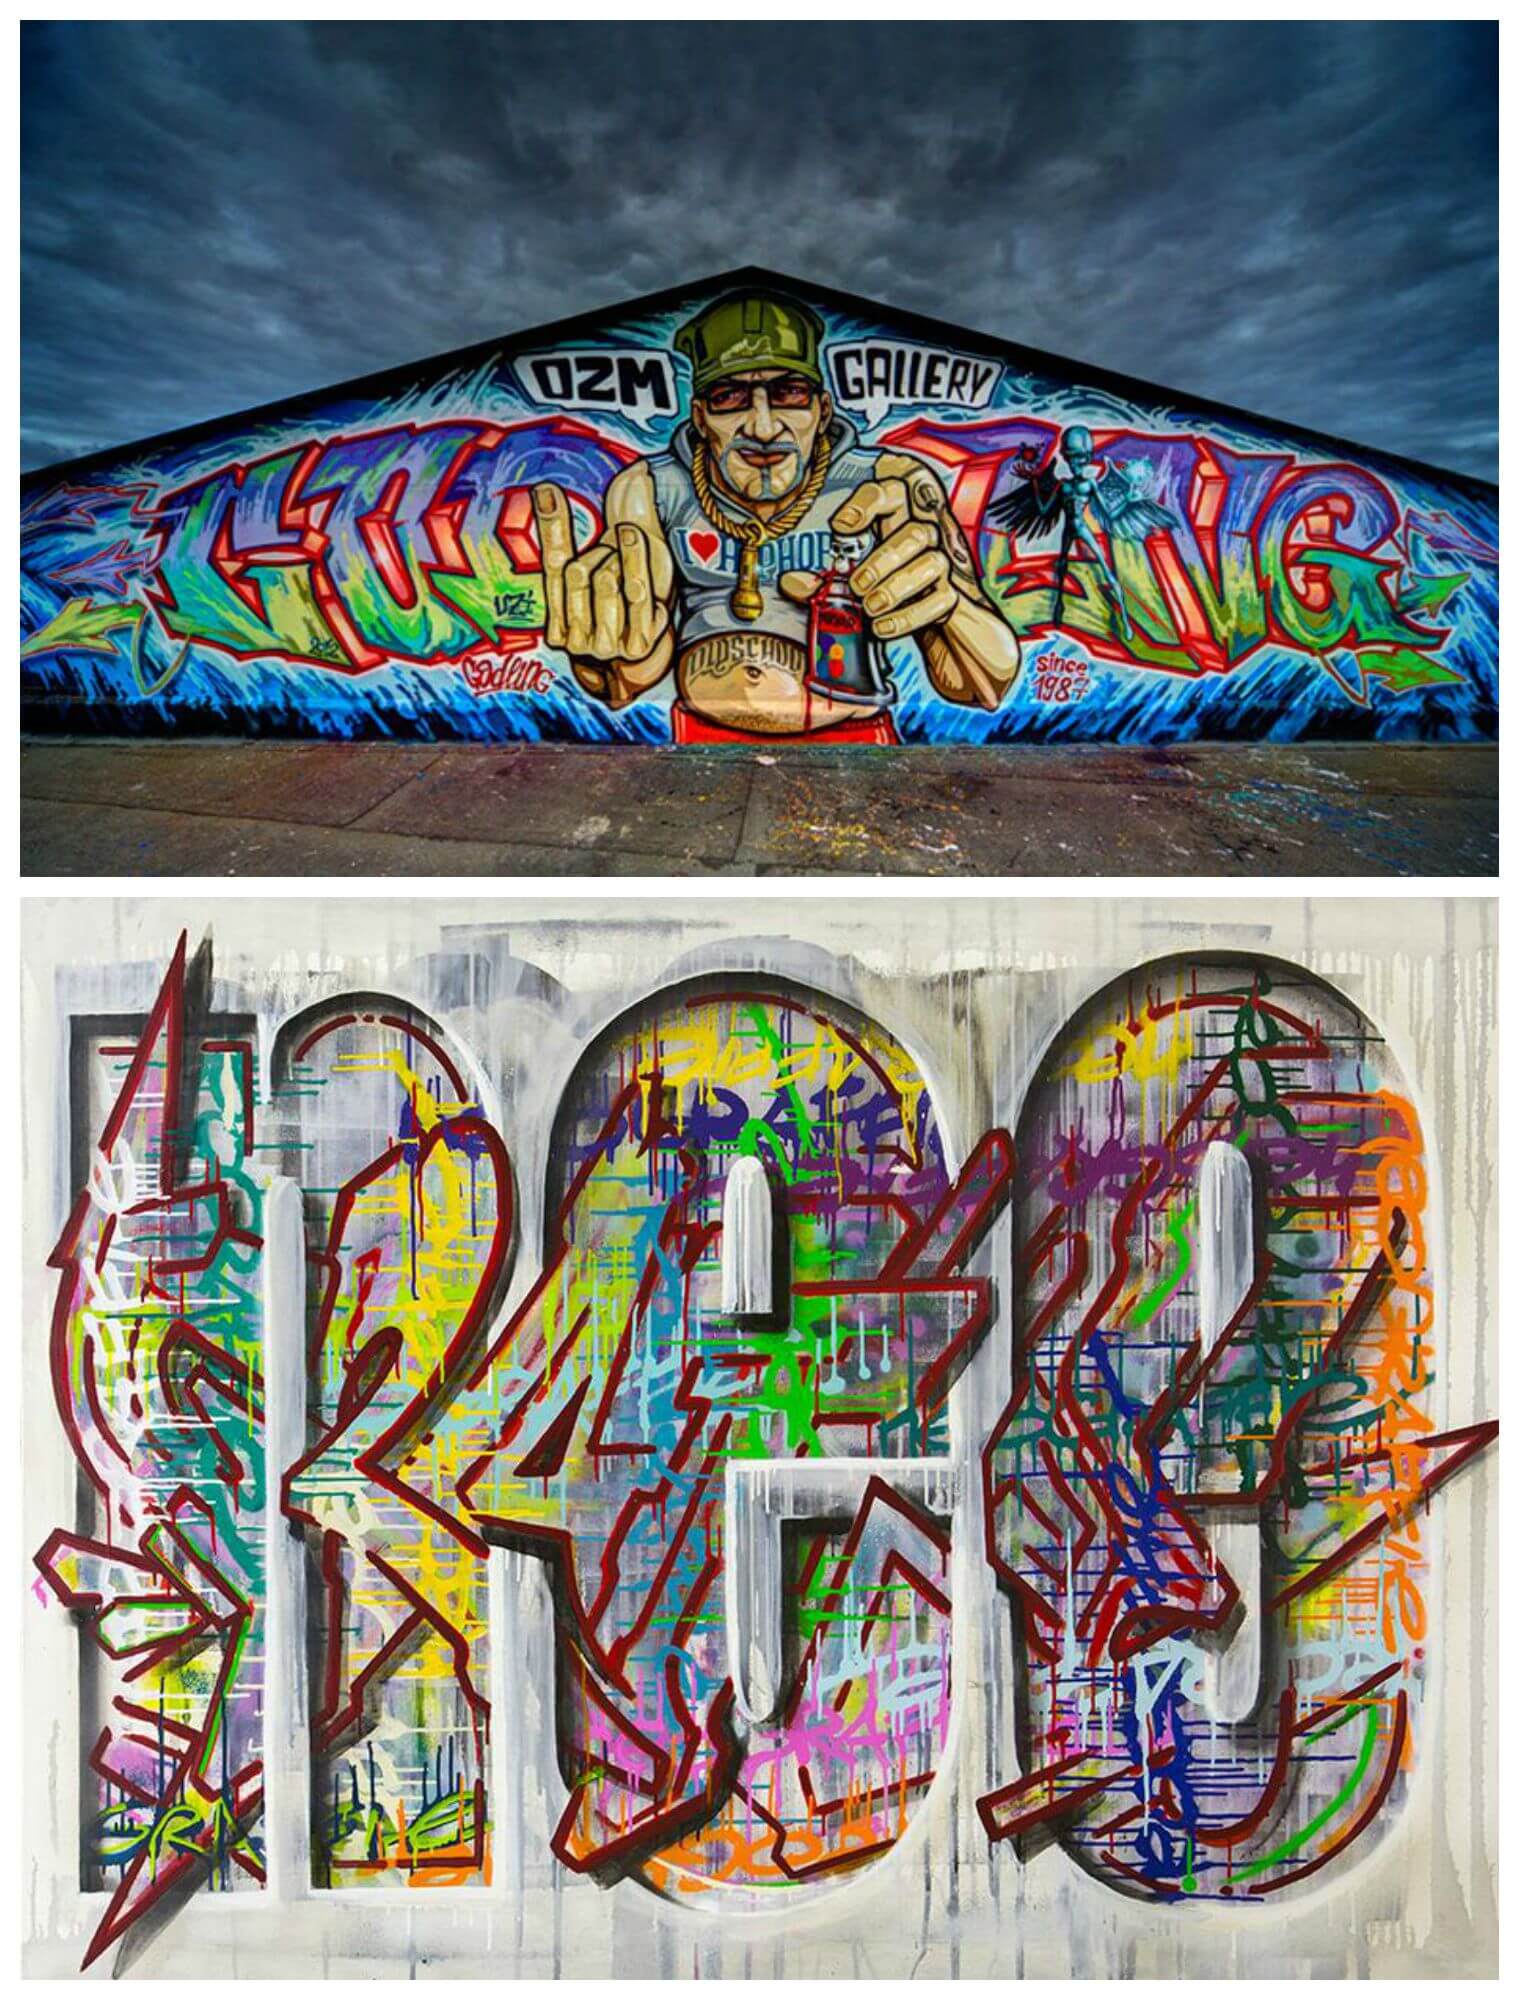 VERNISSAGE! ArtOne und Michael Godling präsentieren im OZM ihre neusten Werke in der Austellung »Neograffie«! Wer sich also von euch für Street Art, Graffiti und moderne Kunst interessiert, der ist hier heute richtig! Bis zum 3. Oktober 2015 ist die Ausstellung noch am Start!